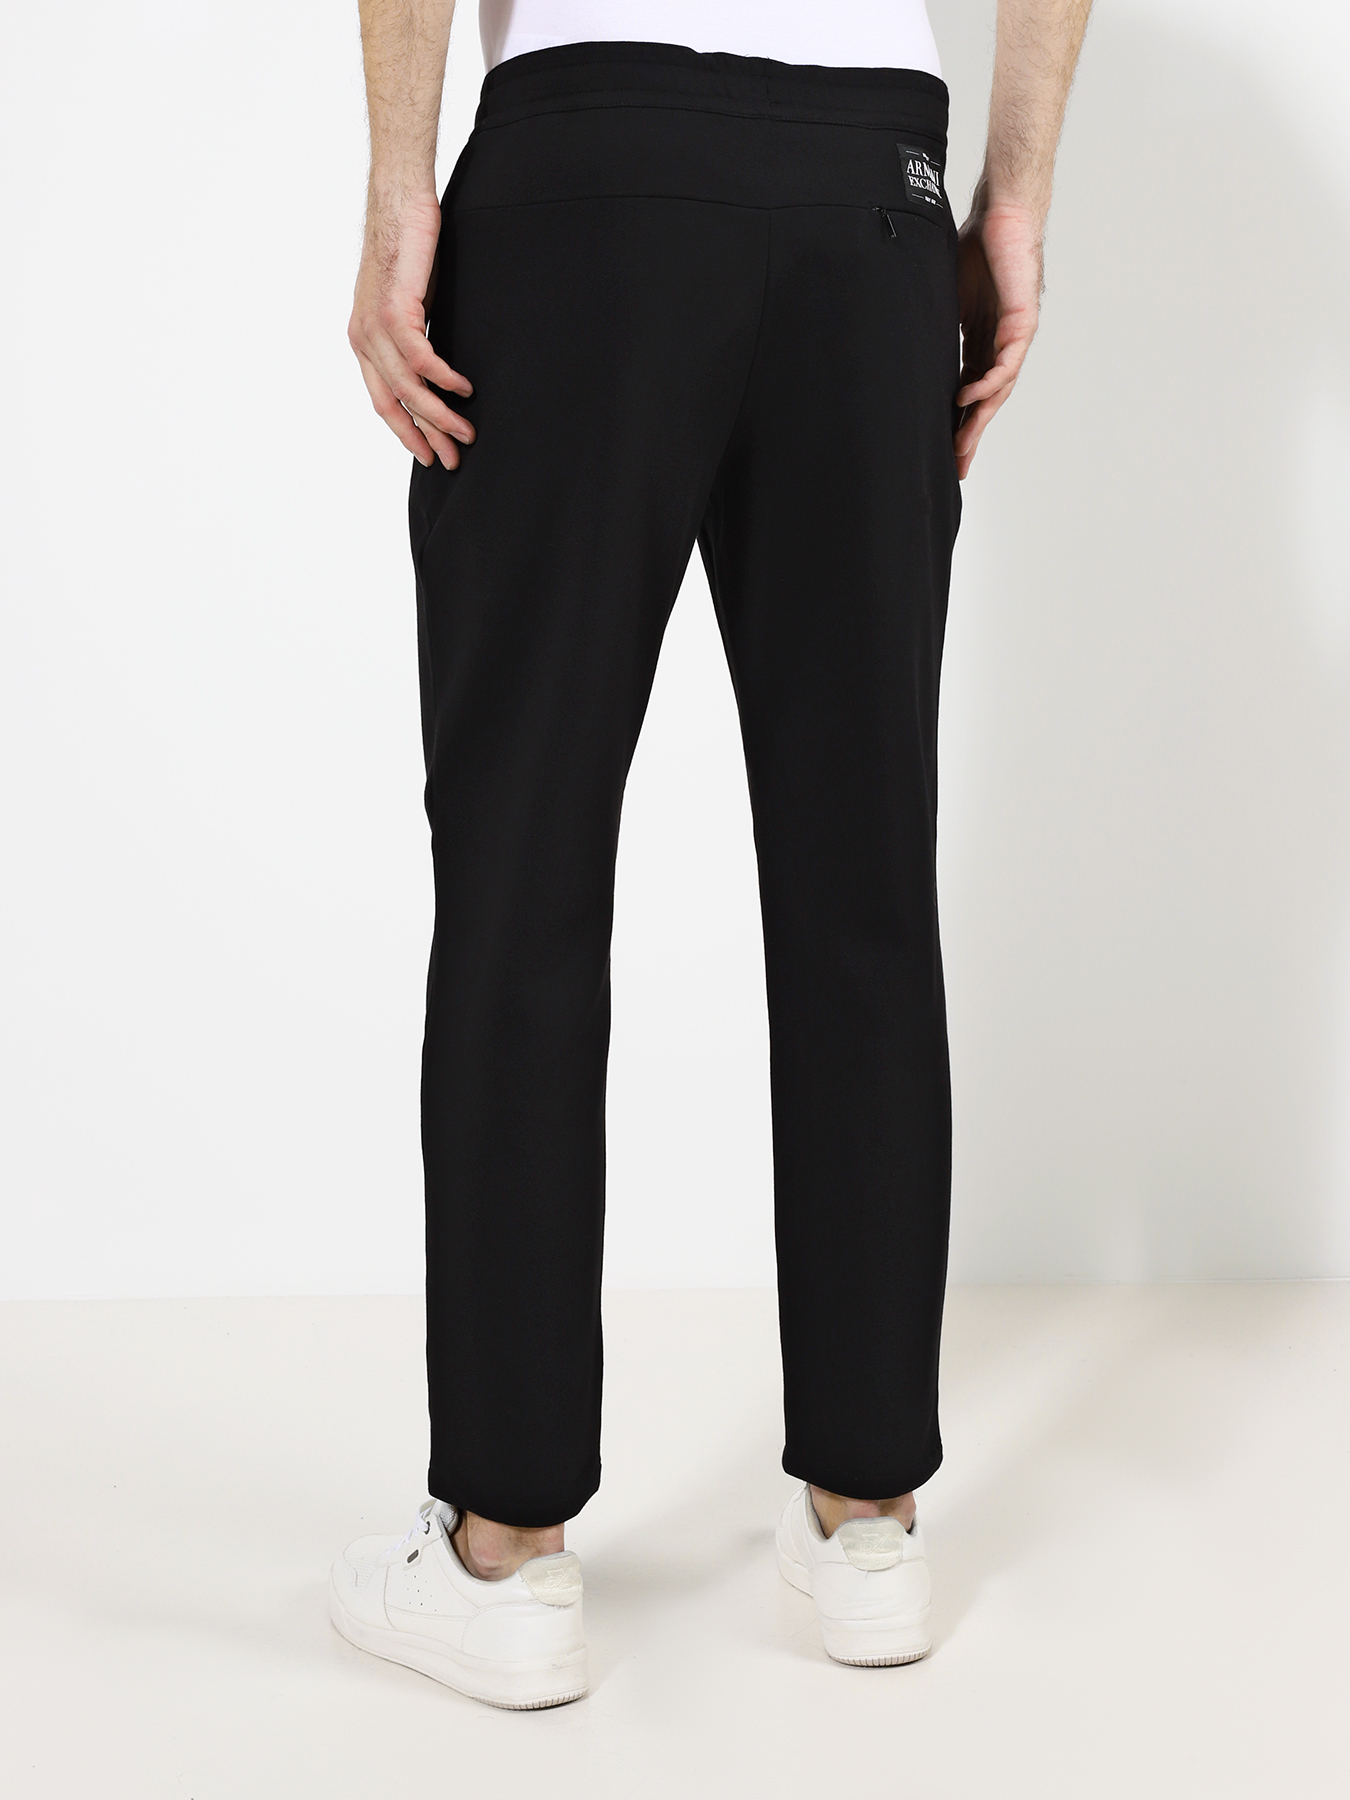 Спортивные брюки Armani Exchange 363981-046, цвет черный, размер 54-56 - фото 5